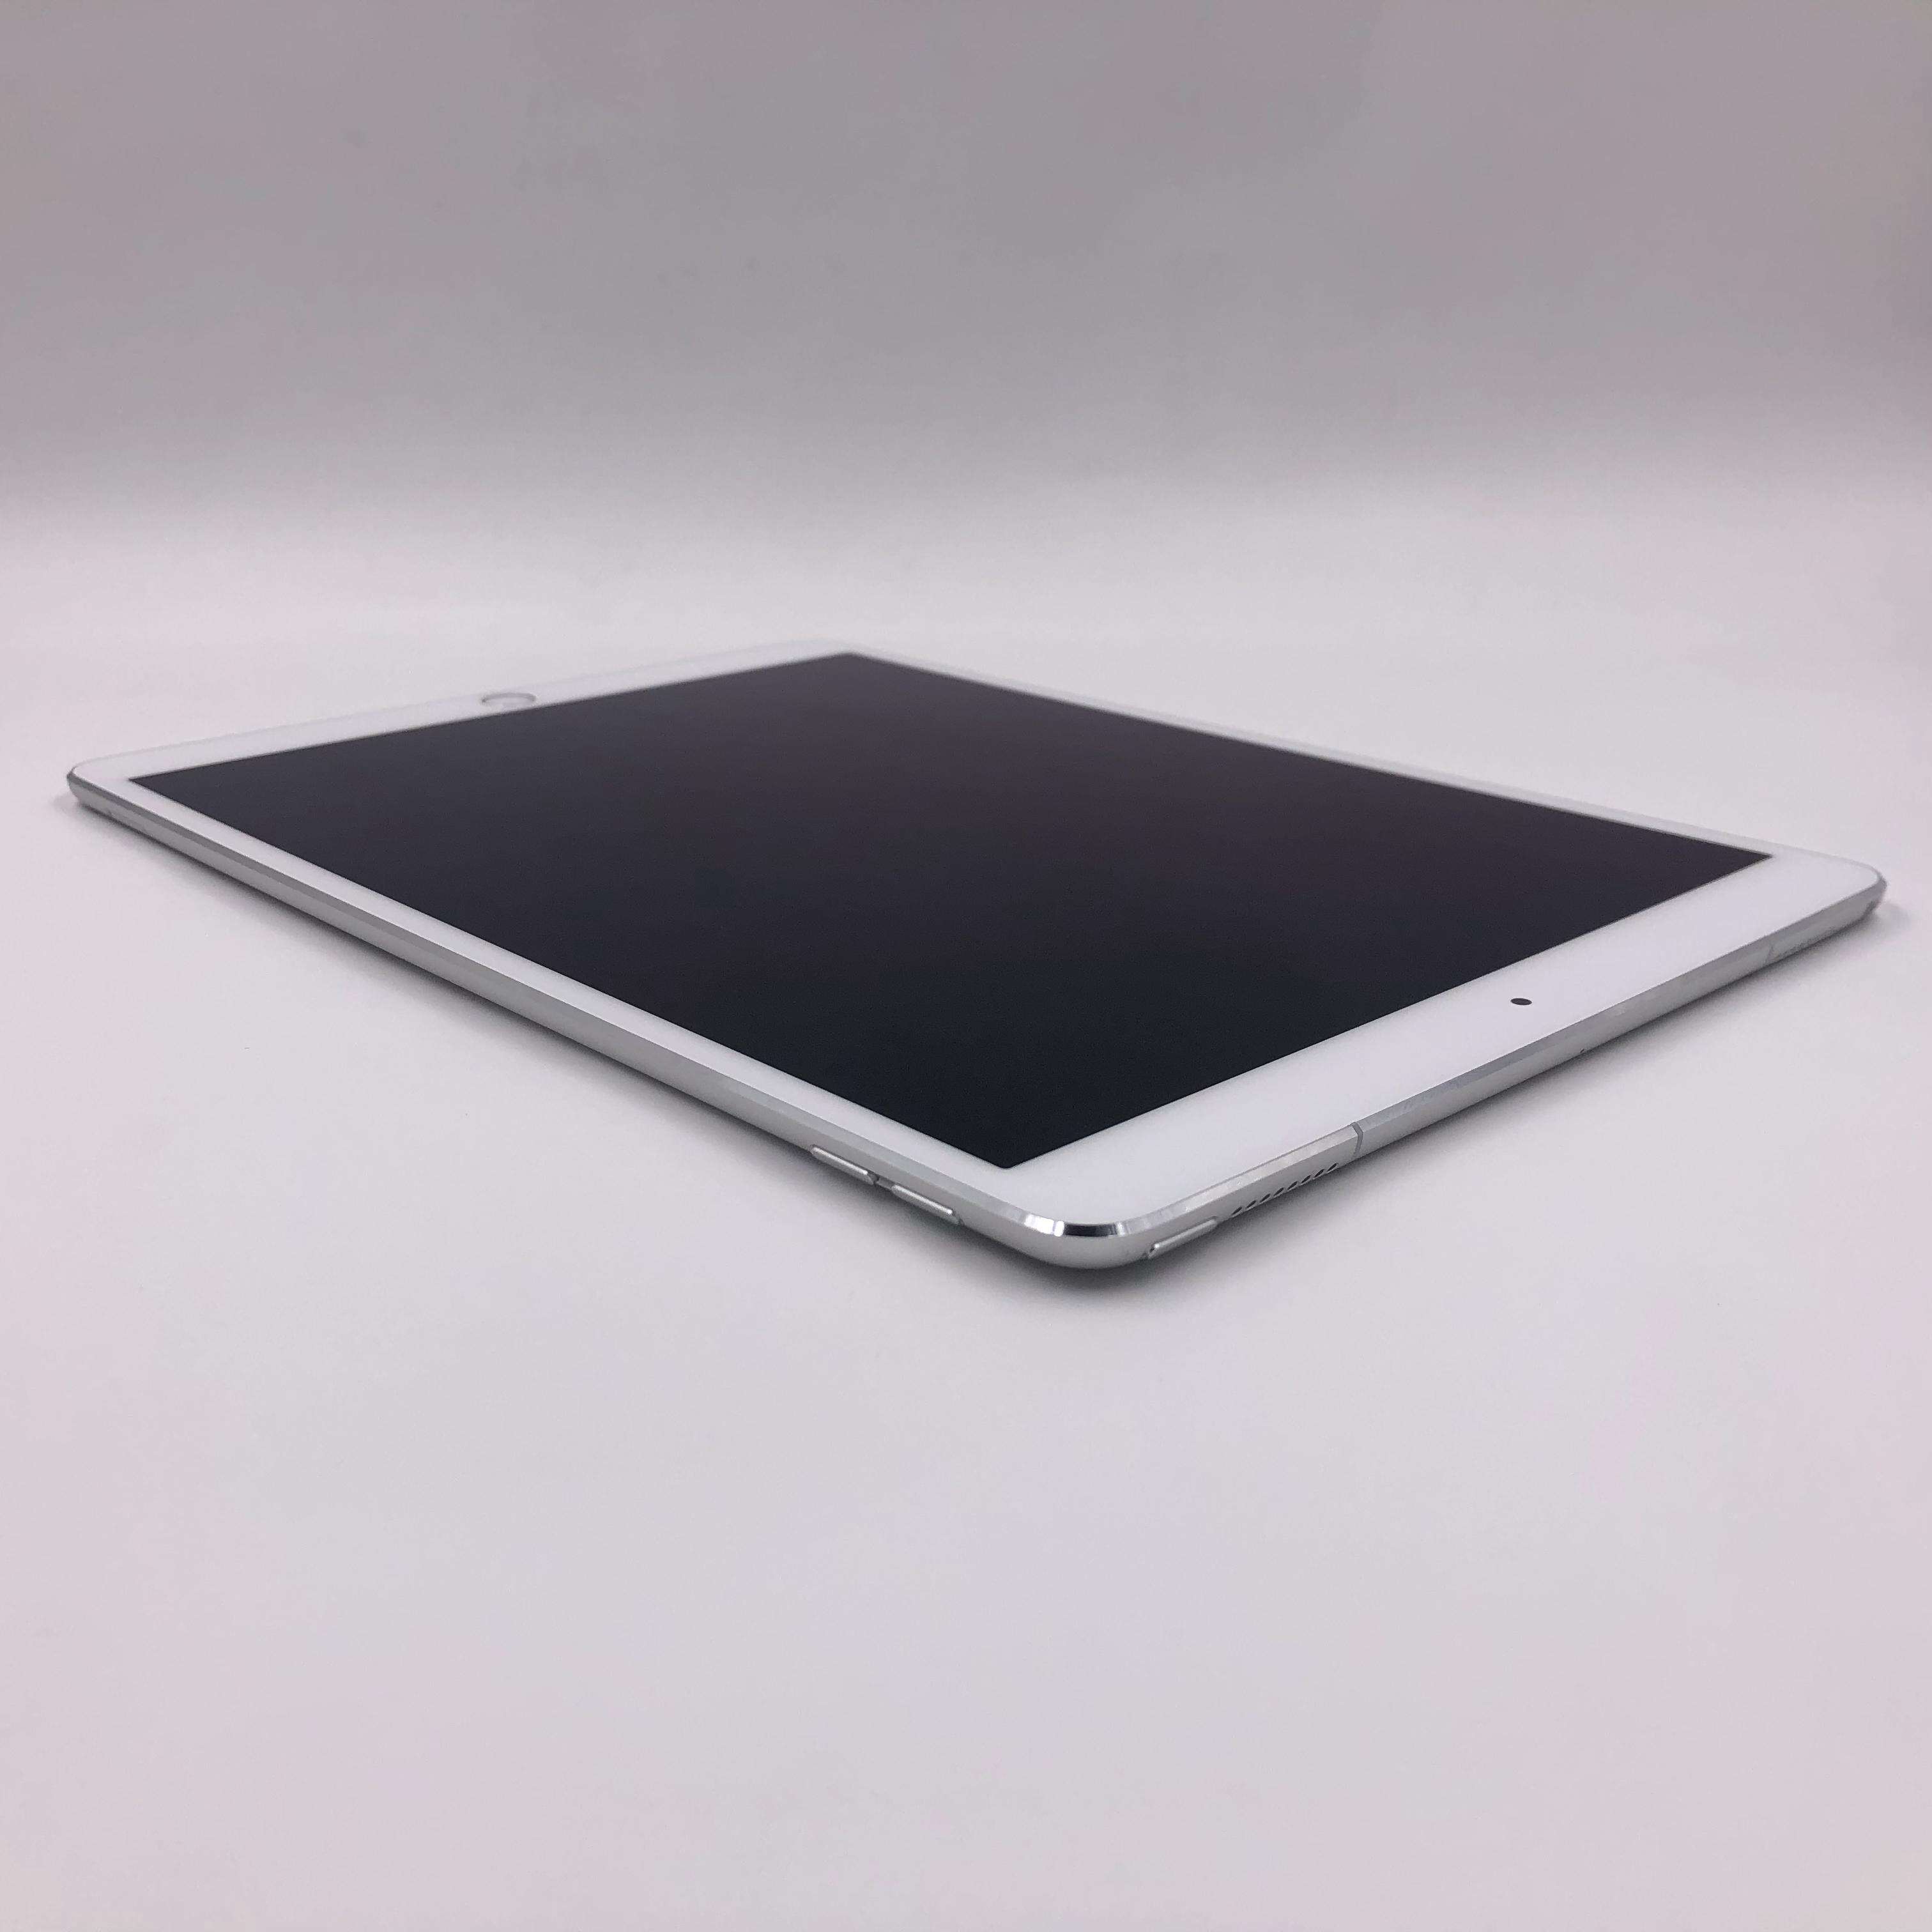 iPad Pro 10.5英寸(2017) 512G Cellular版